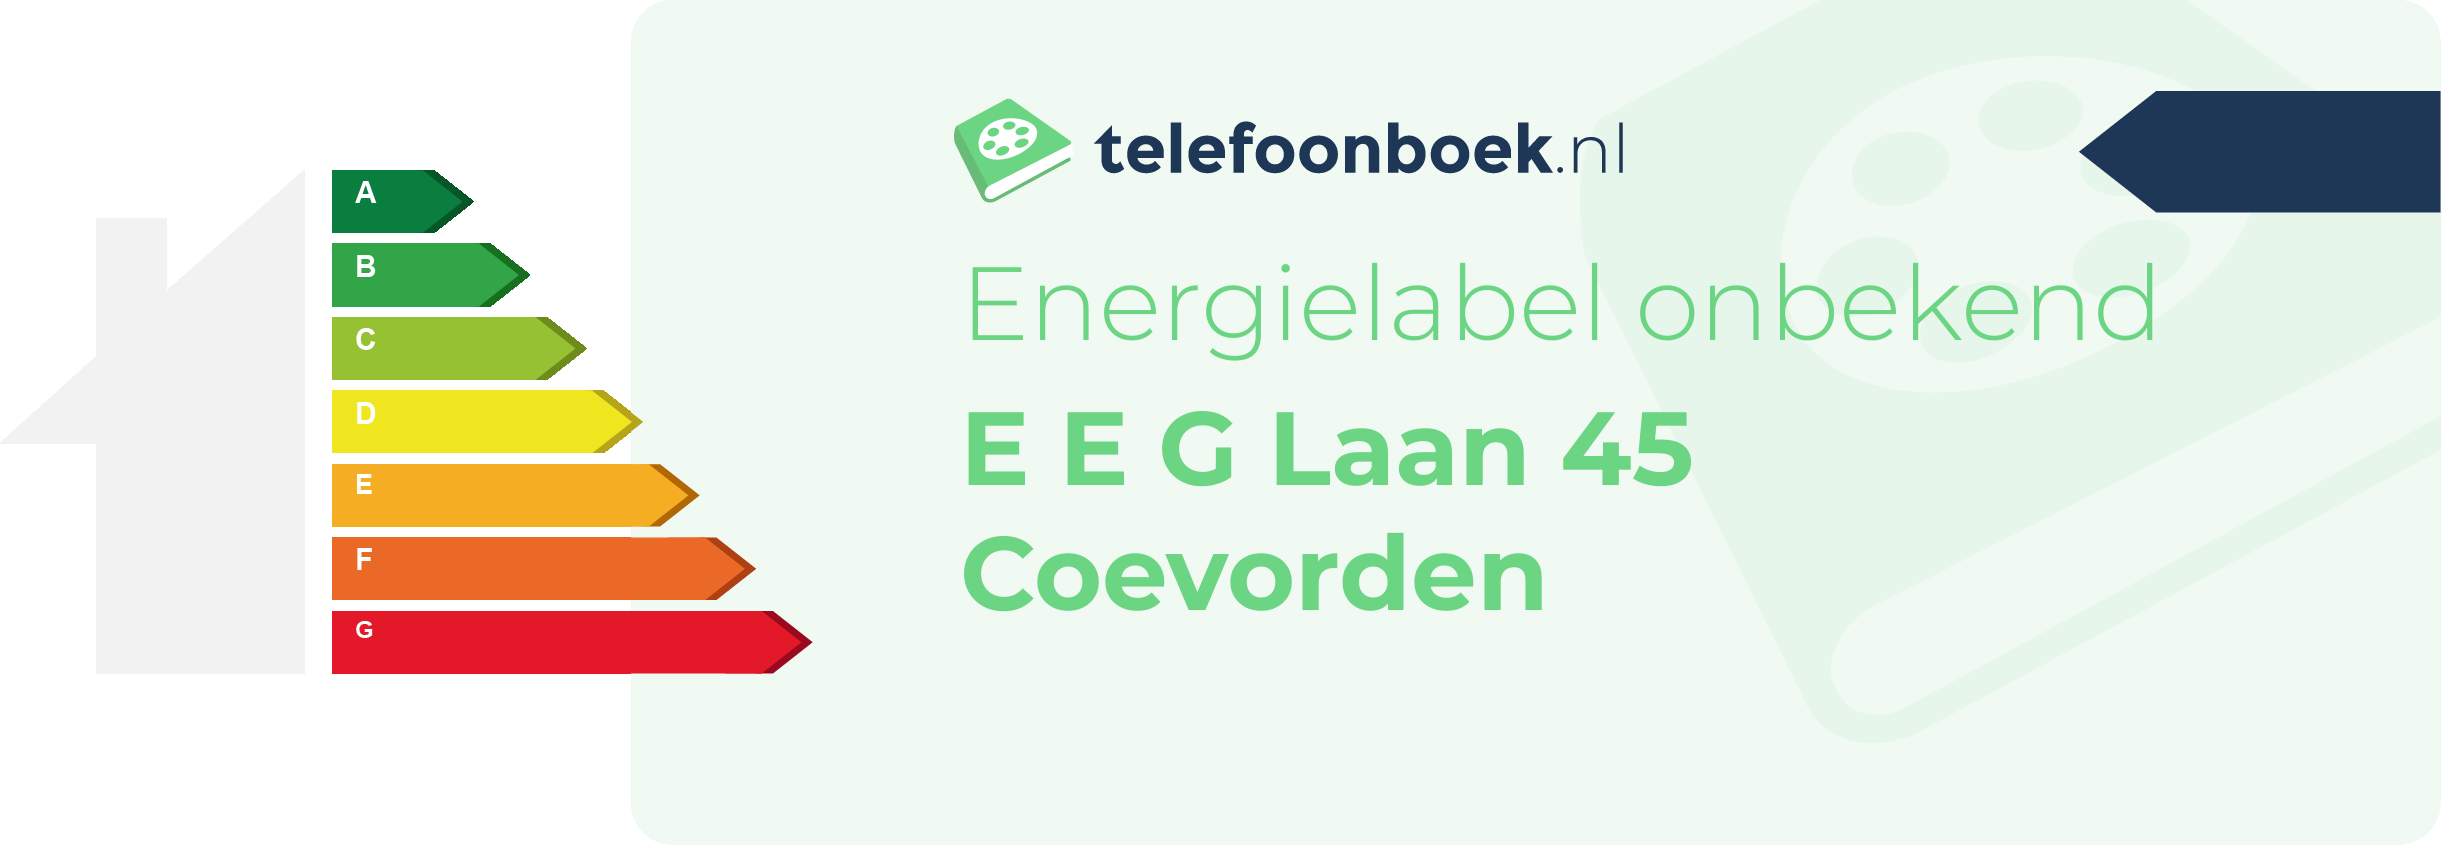 Energielabel E E G Laan 45 Coevorden